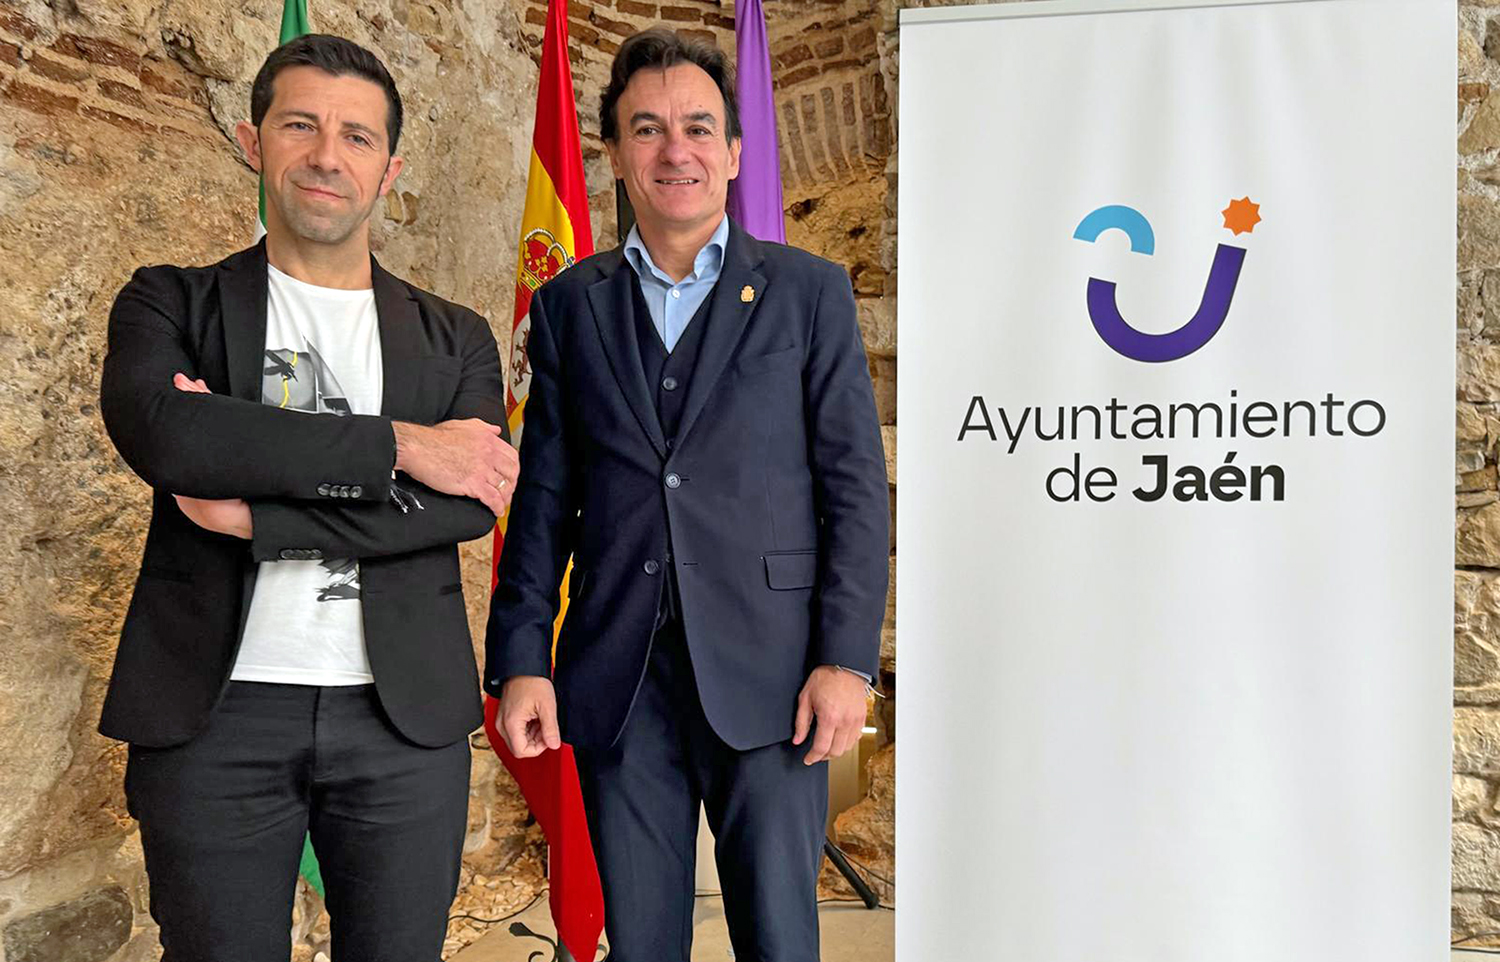 Nuevo logo para Jaén capital con “una imagen innovadora, muy fresca y que refleja la convivencia religiosa y cultural”, dice el alcalde